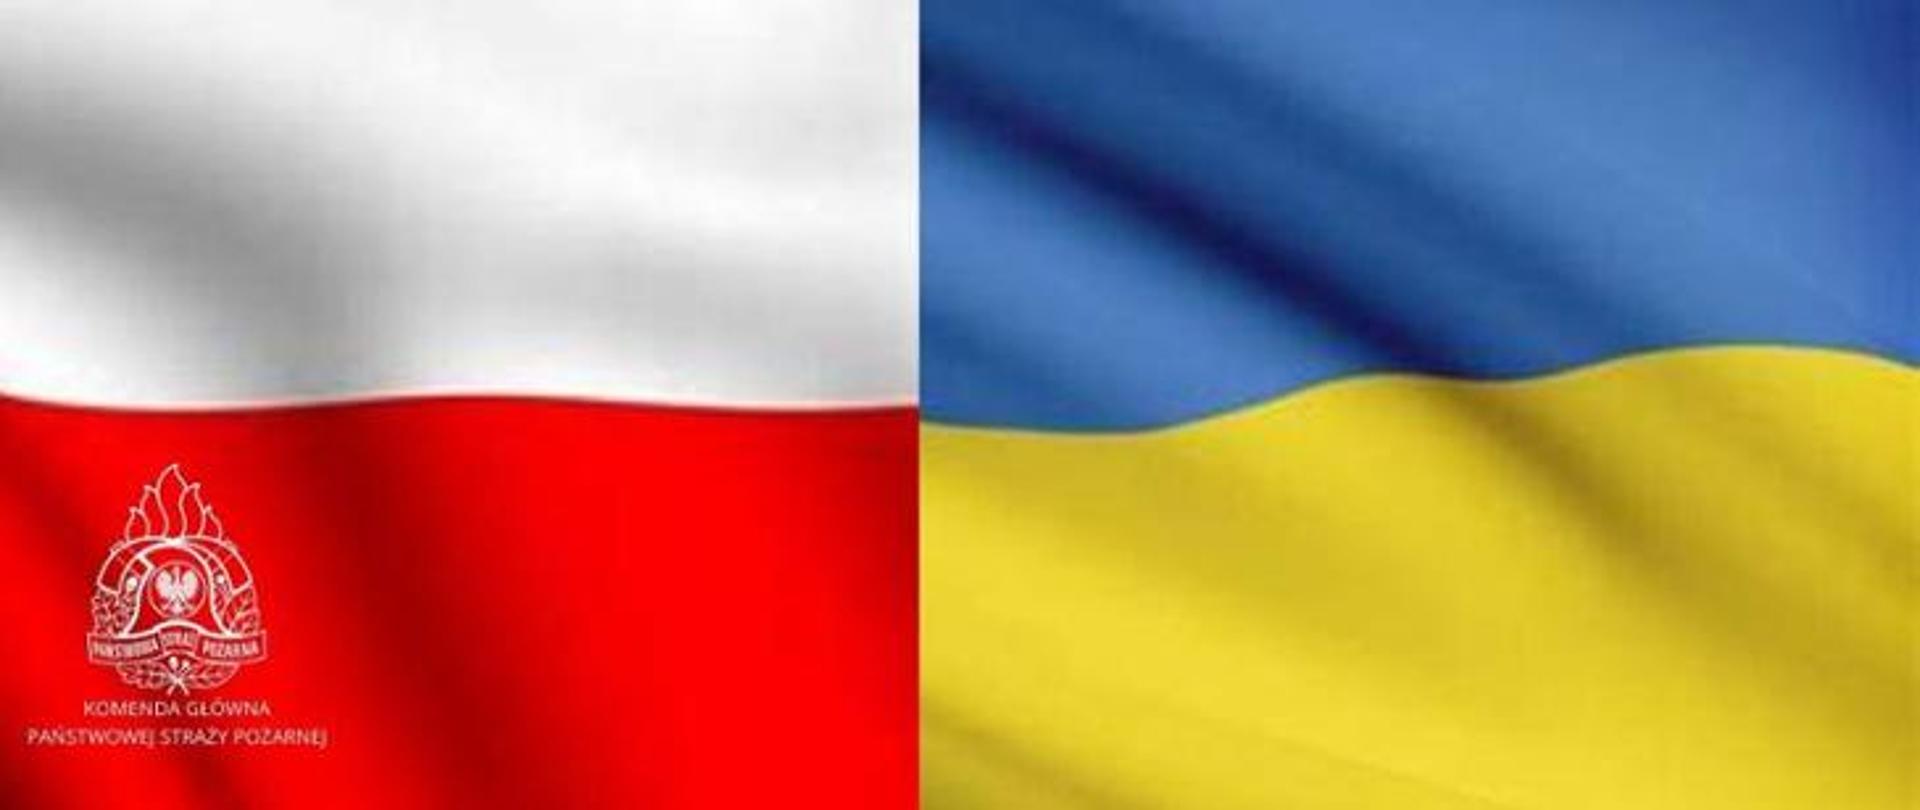 Obraz przedstawia grafikę flagi Polski i Ukrainy z logiem PSP